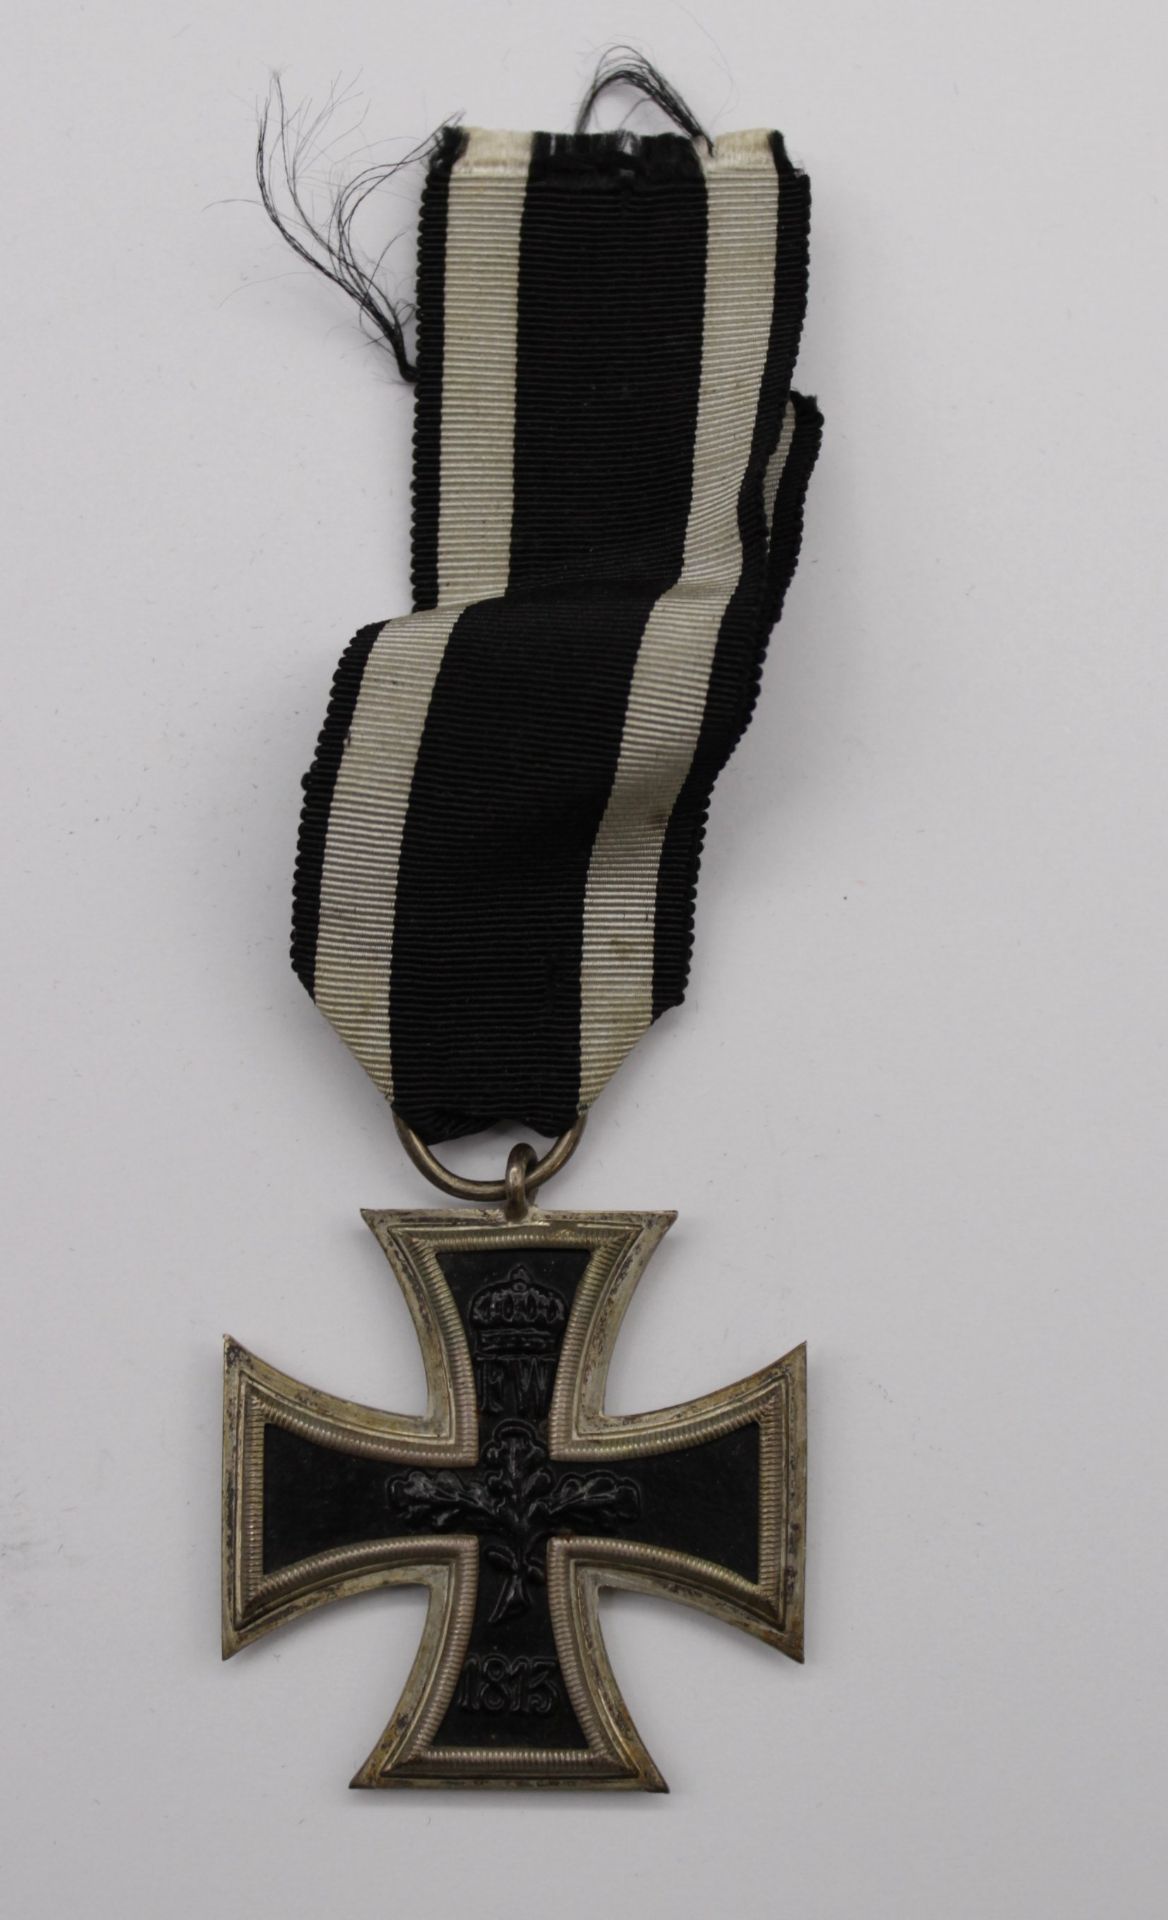 Eisernes Kreuz, 1. WK, Ring mit Hersteller "H.B."